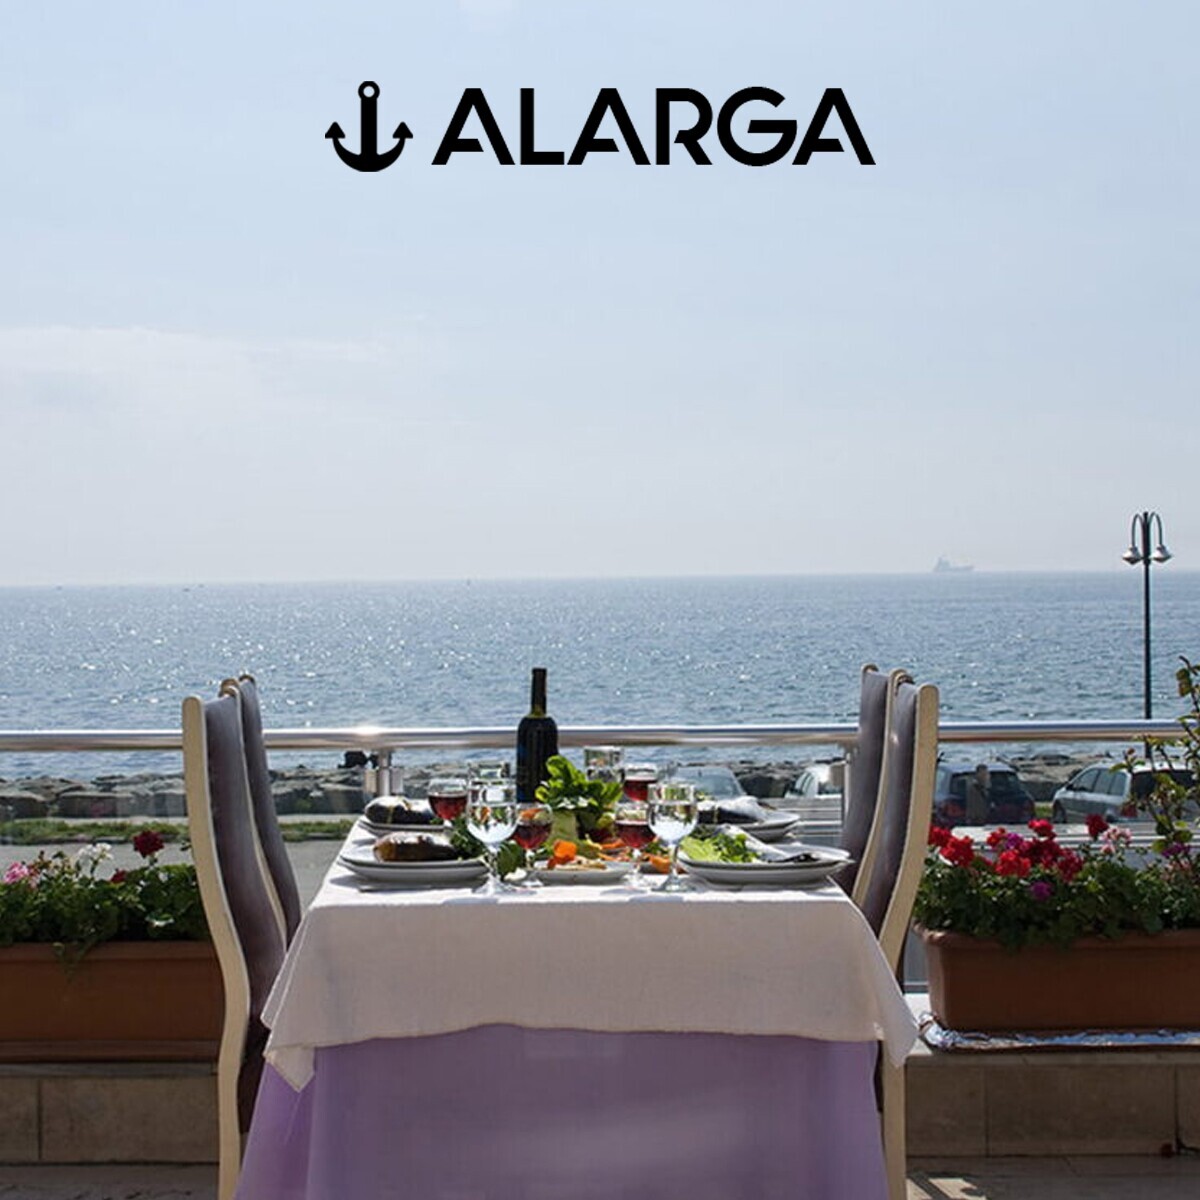 Florya Alarga Balık Restaurant'ta Damağınızı Mest Edecek Yemek Menüsü